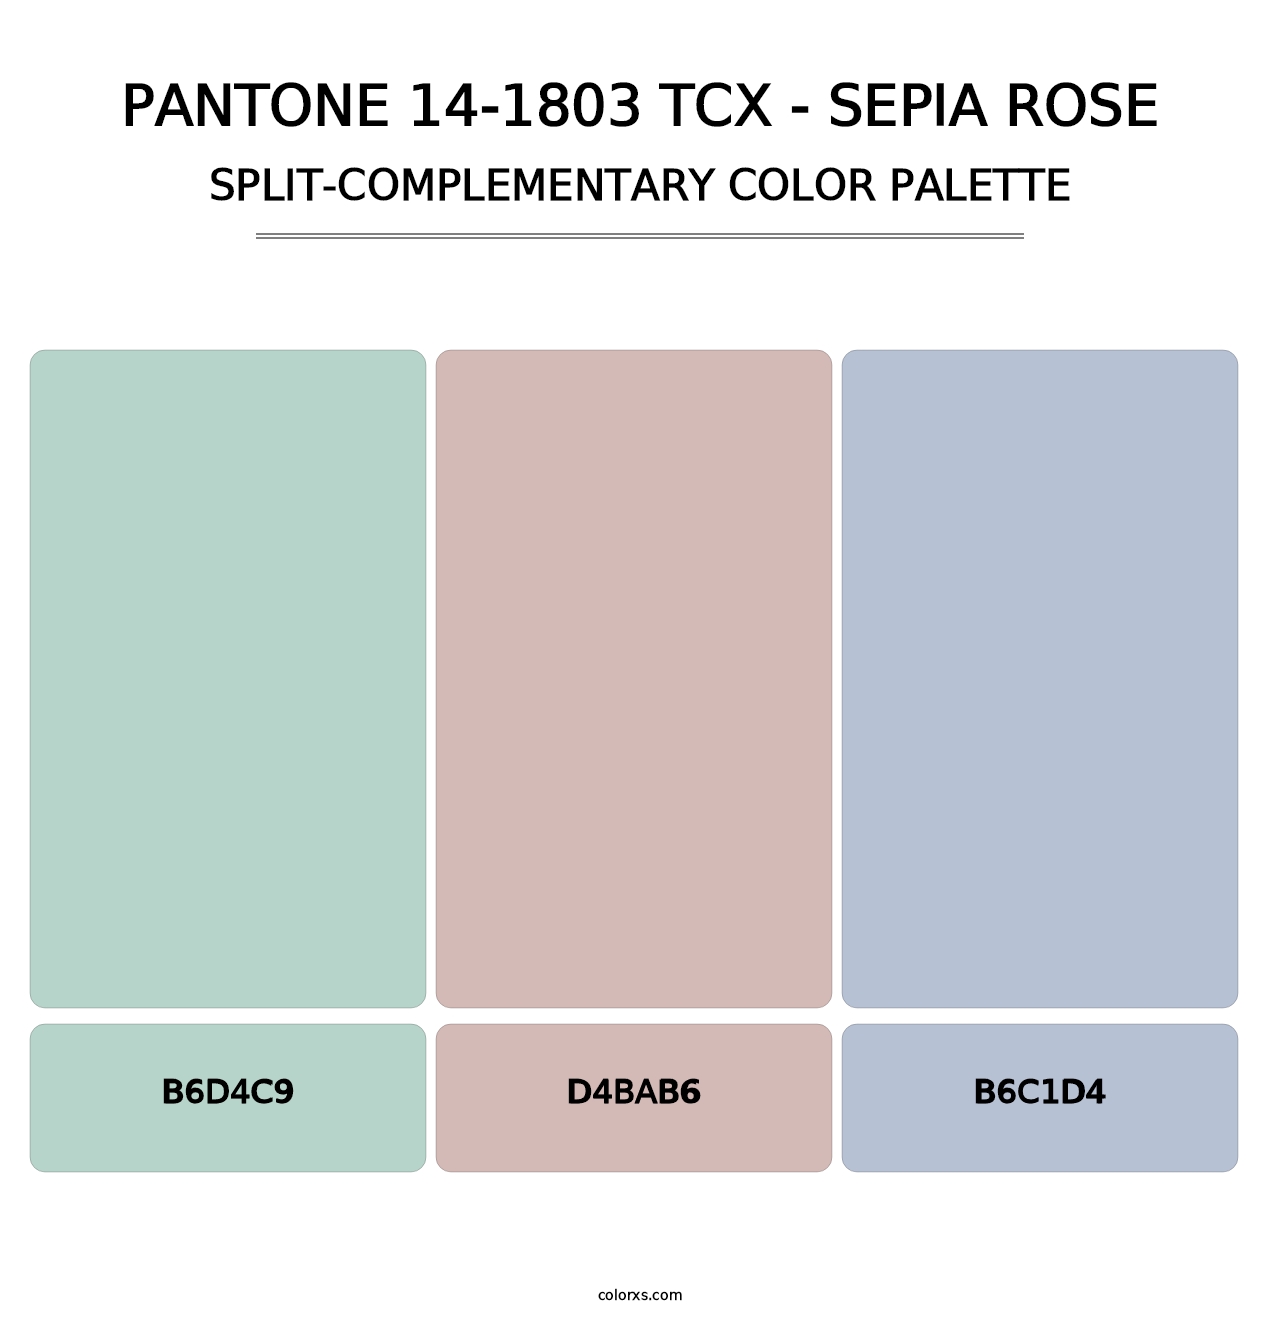 PANTONE 14-1803 TCX - Sepia Rose - Split-Complementary Color Palette